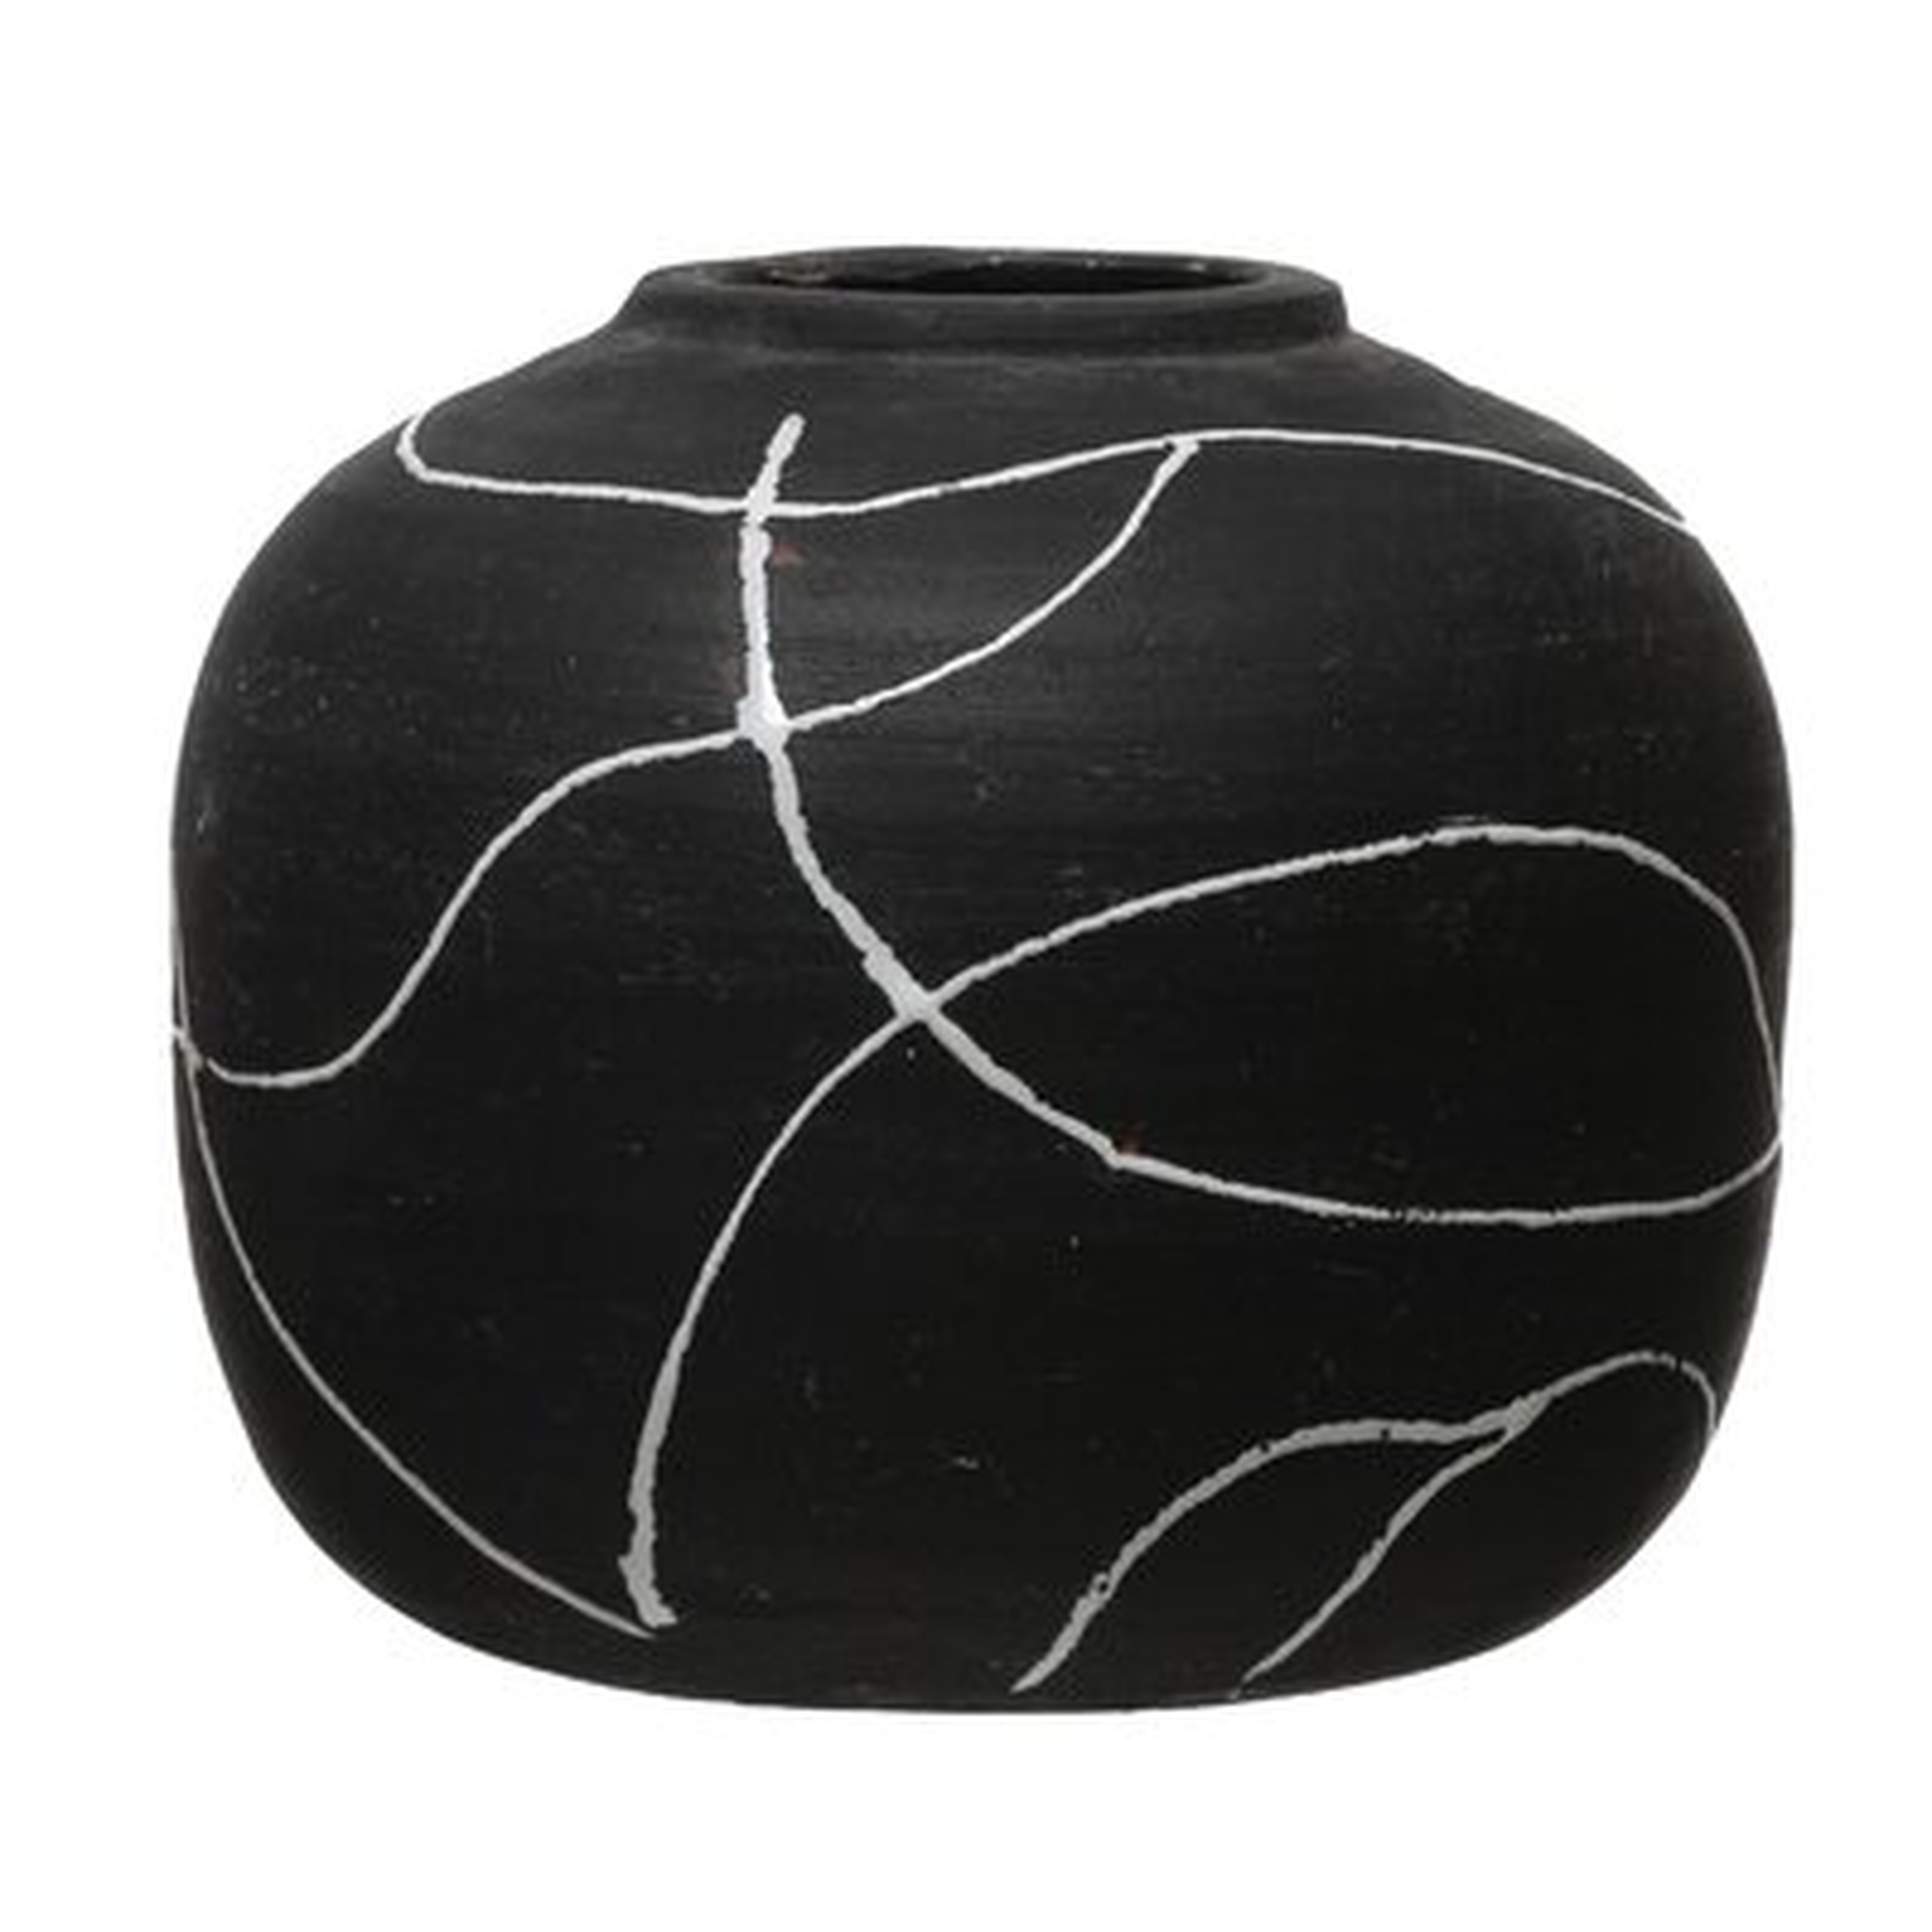 Analyss Black/White 6.5" Terracotta Table Vase - Wayfair